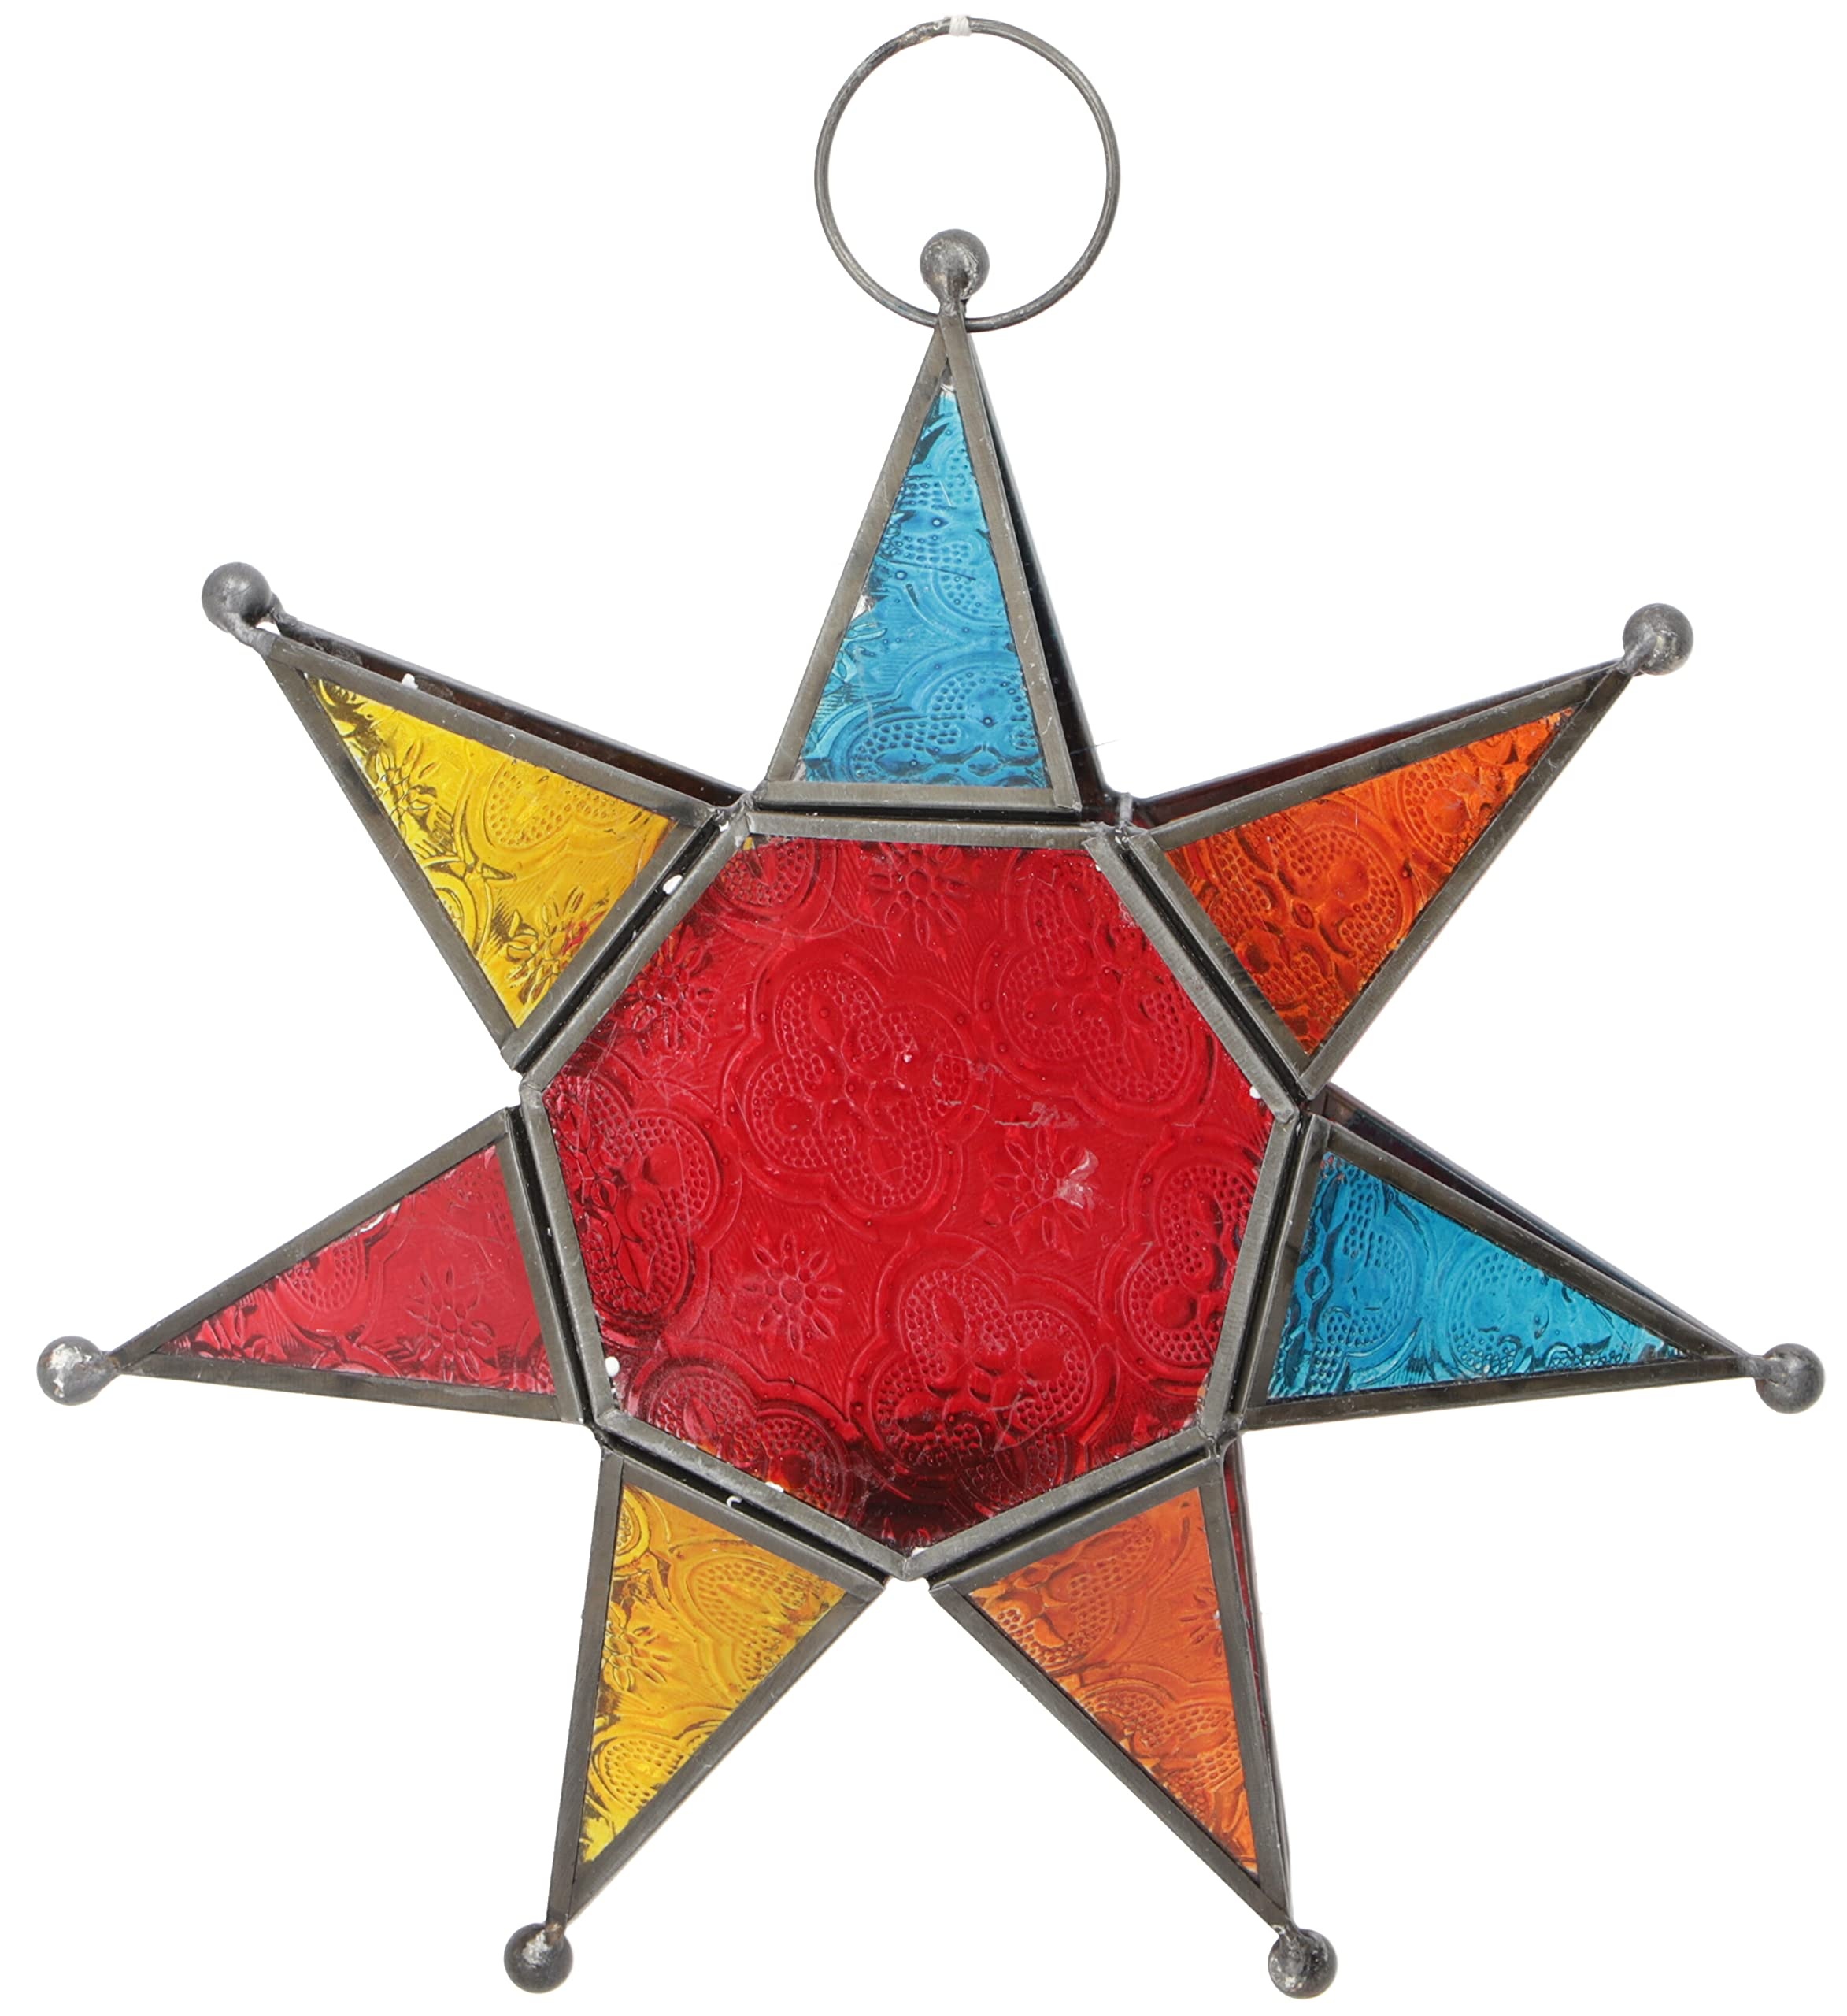 GURU SHOP Orientalischer Glas Stern in Marrokanischem Design, Glas Laterne, Windlicht - Modell 1, Mehrfarbig, 25x25x7 cm, Teelichthalter & Kerzenhalter